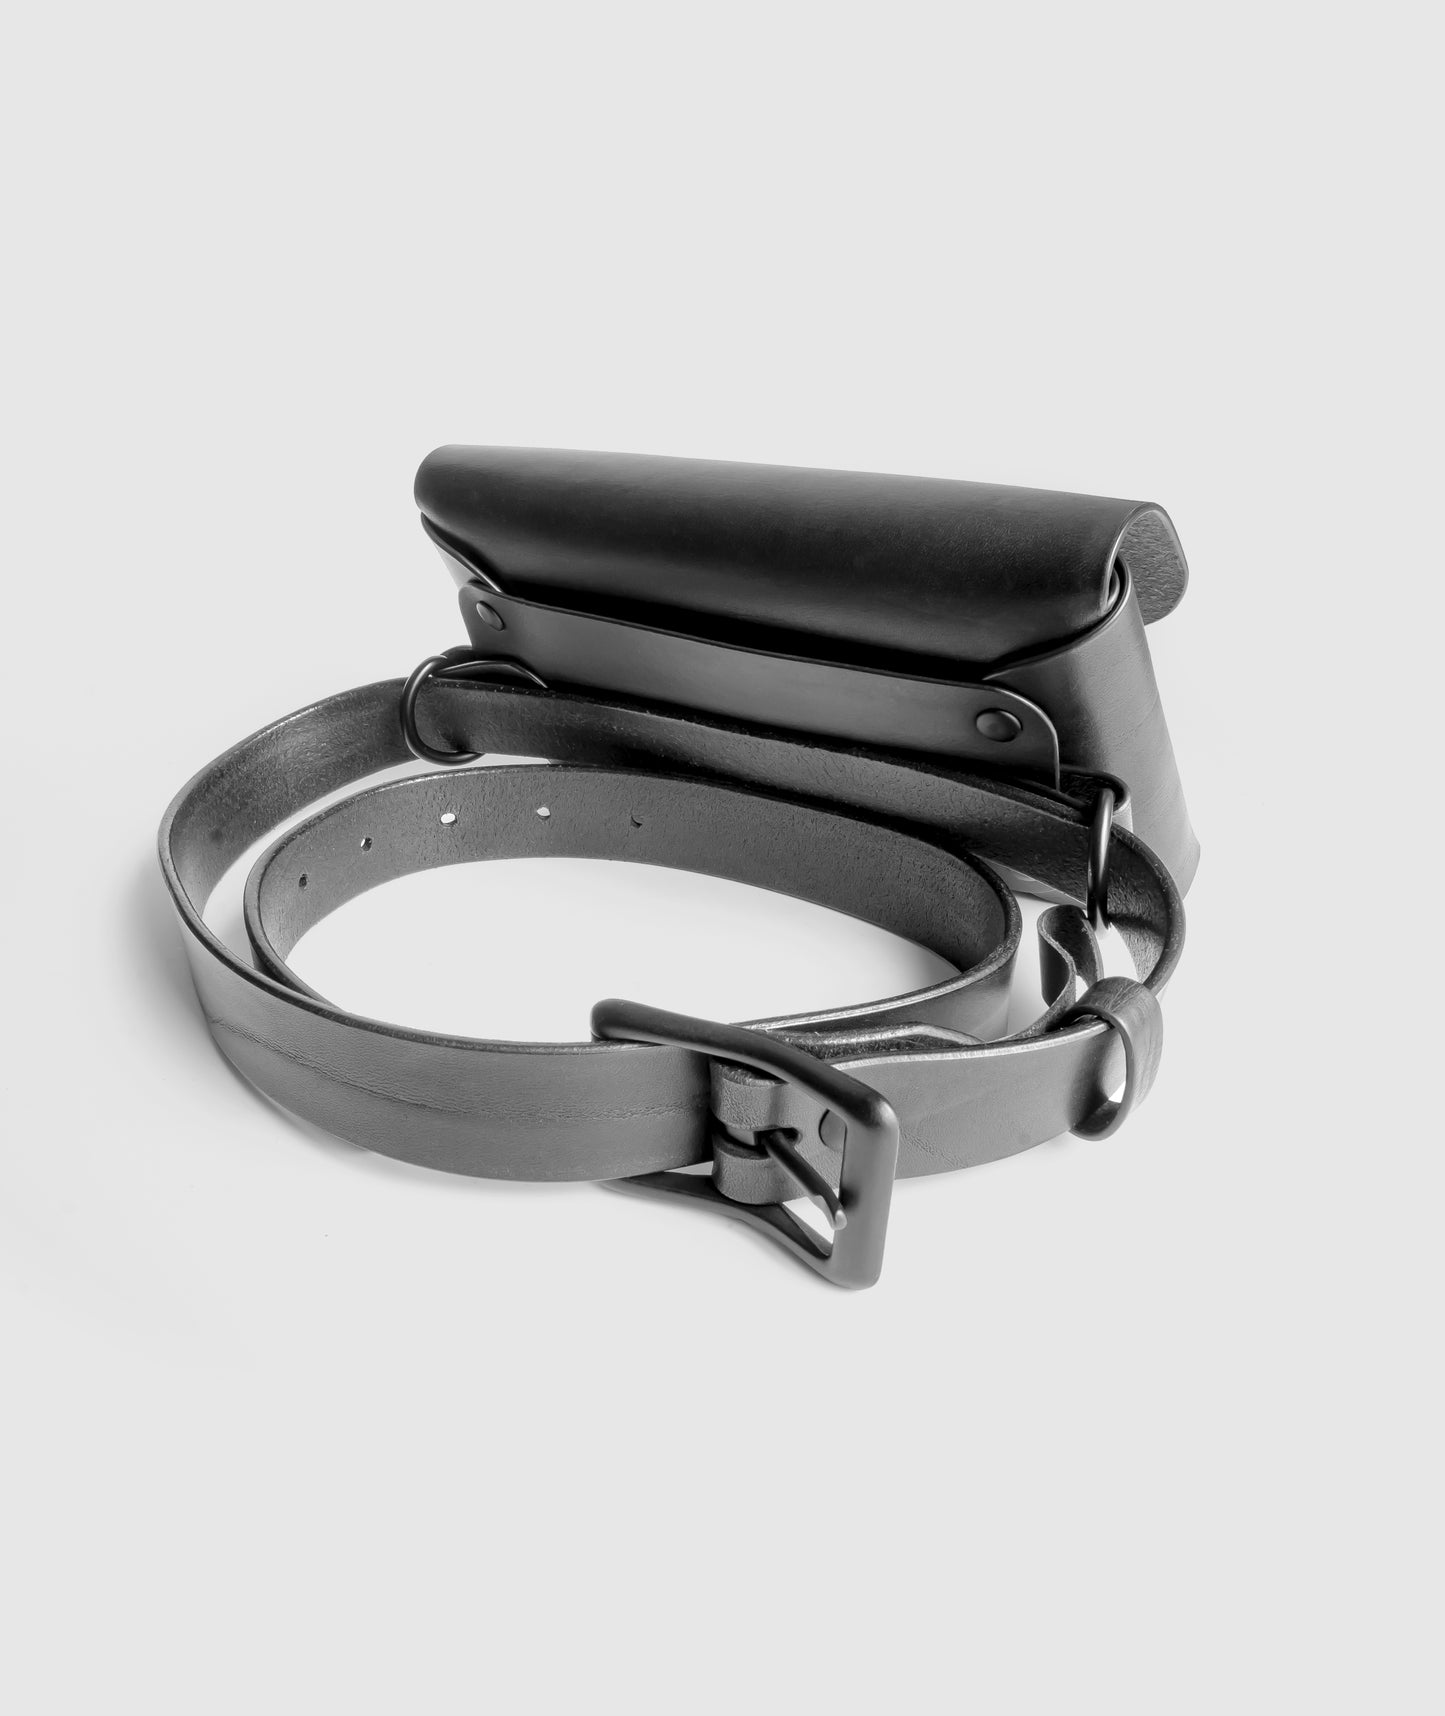 Custom fit black leather belt bag